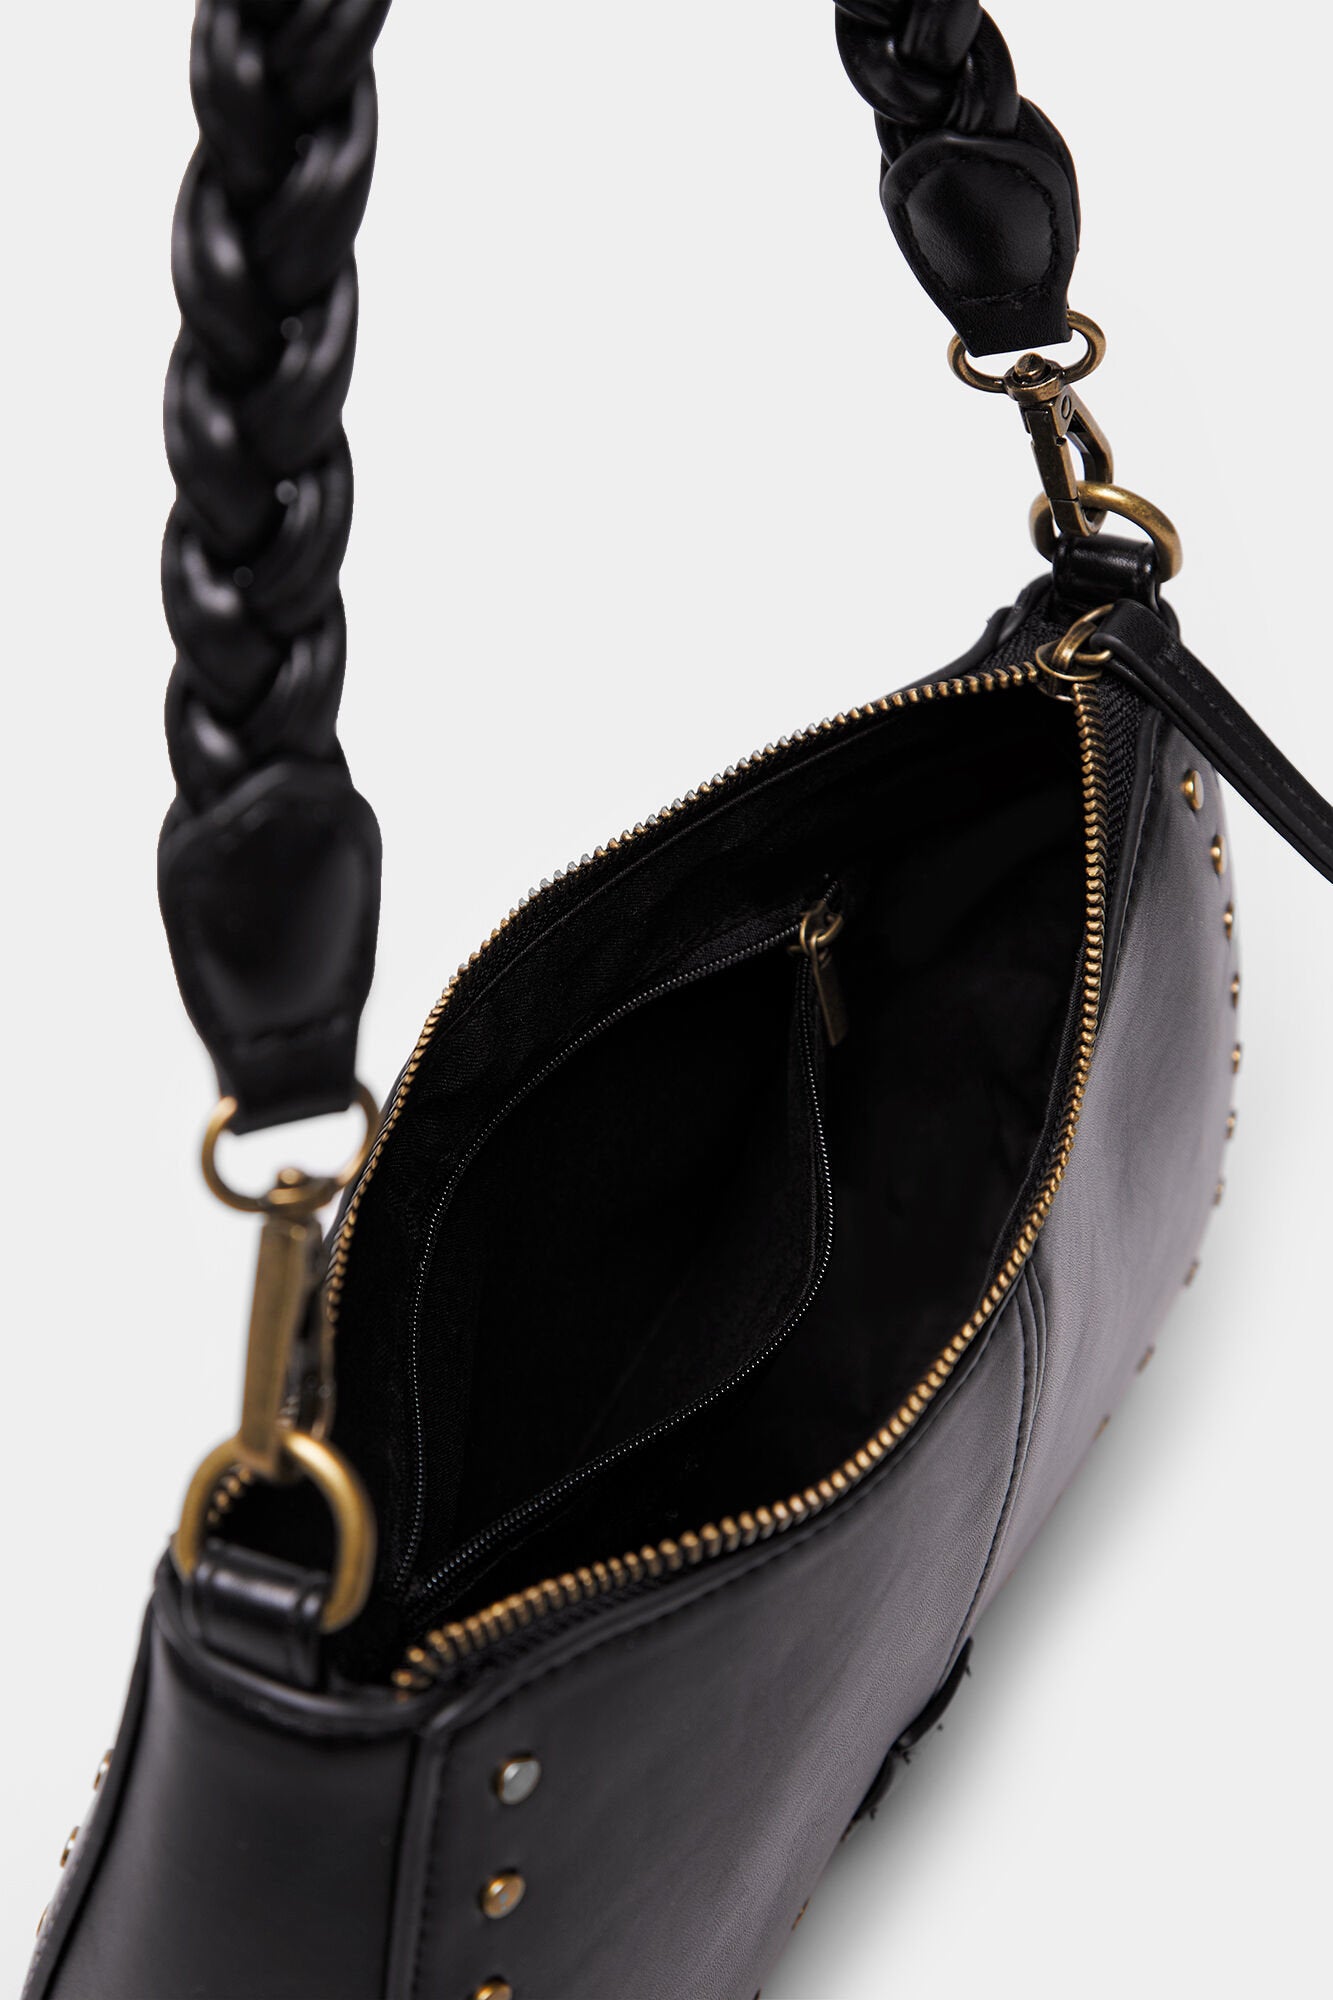 Black Shoulder Bag With Braided Strap_8527381_01_03